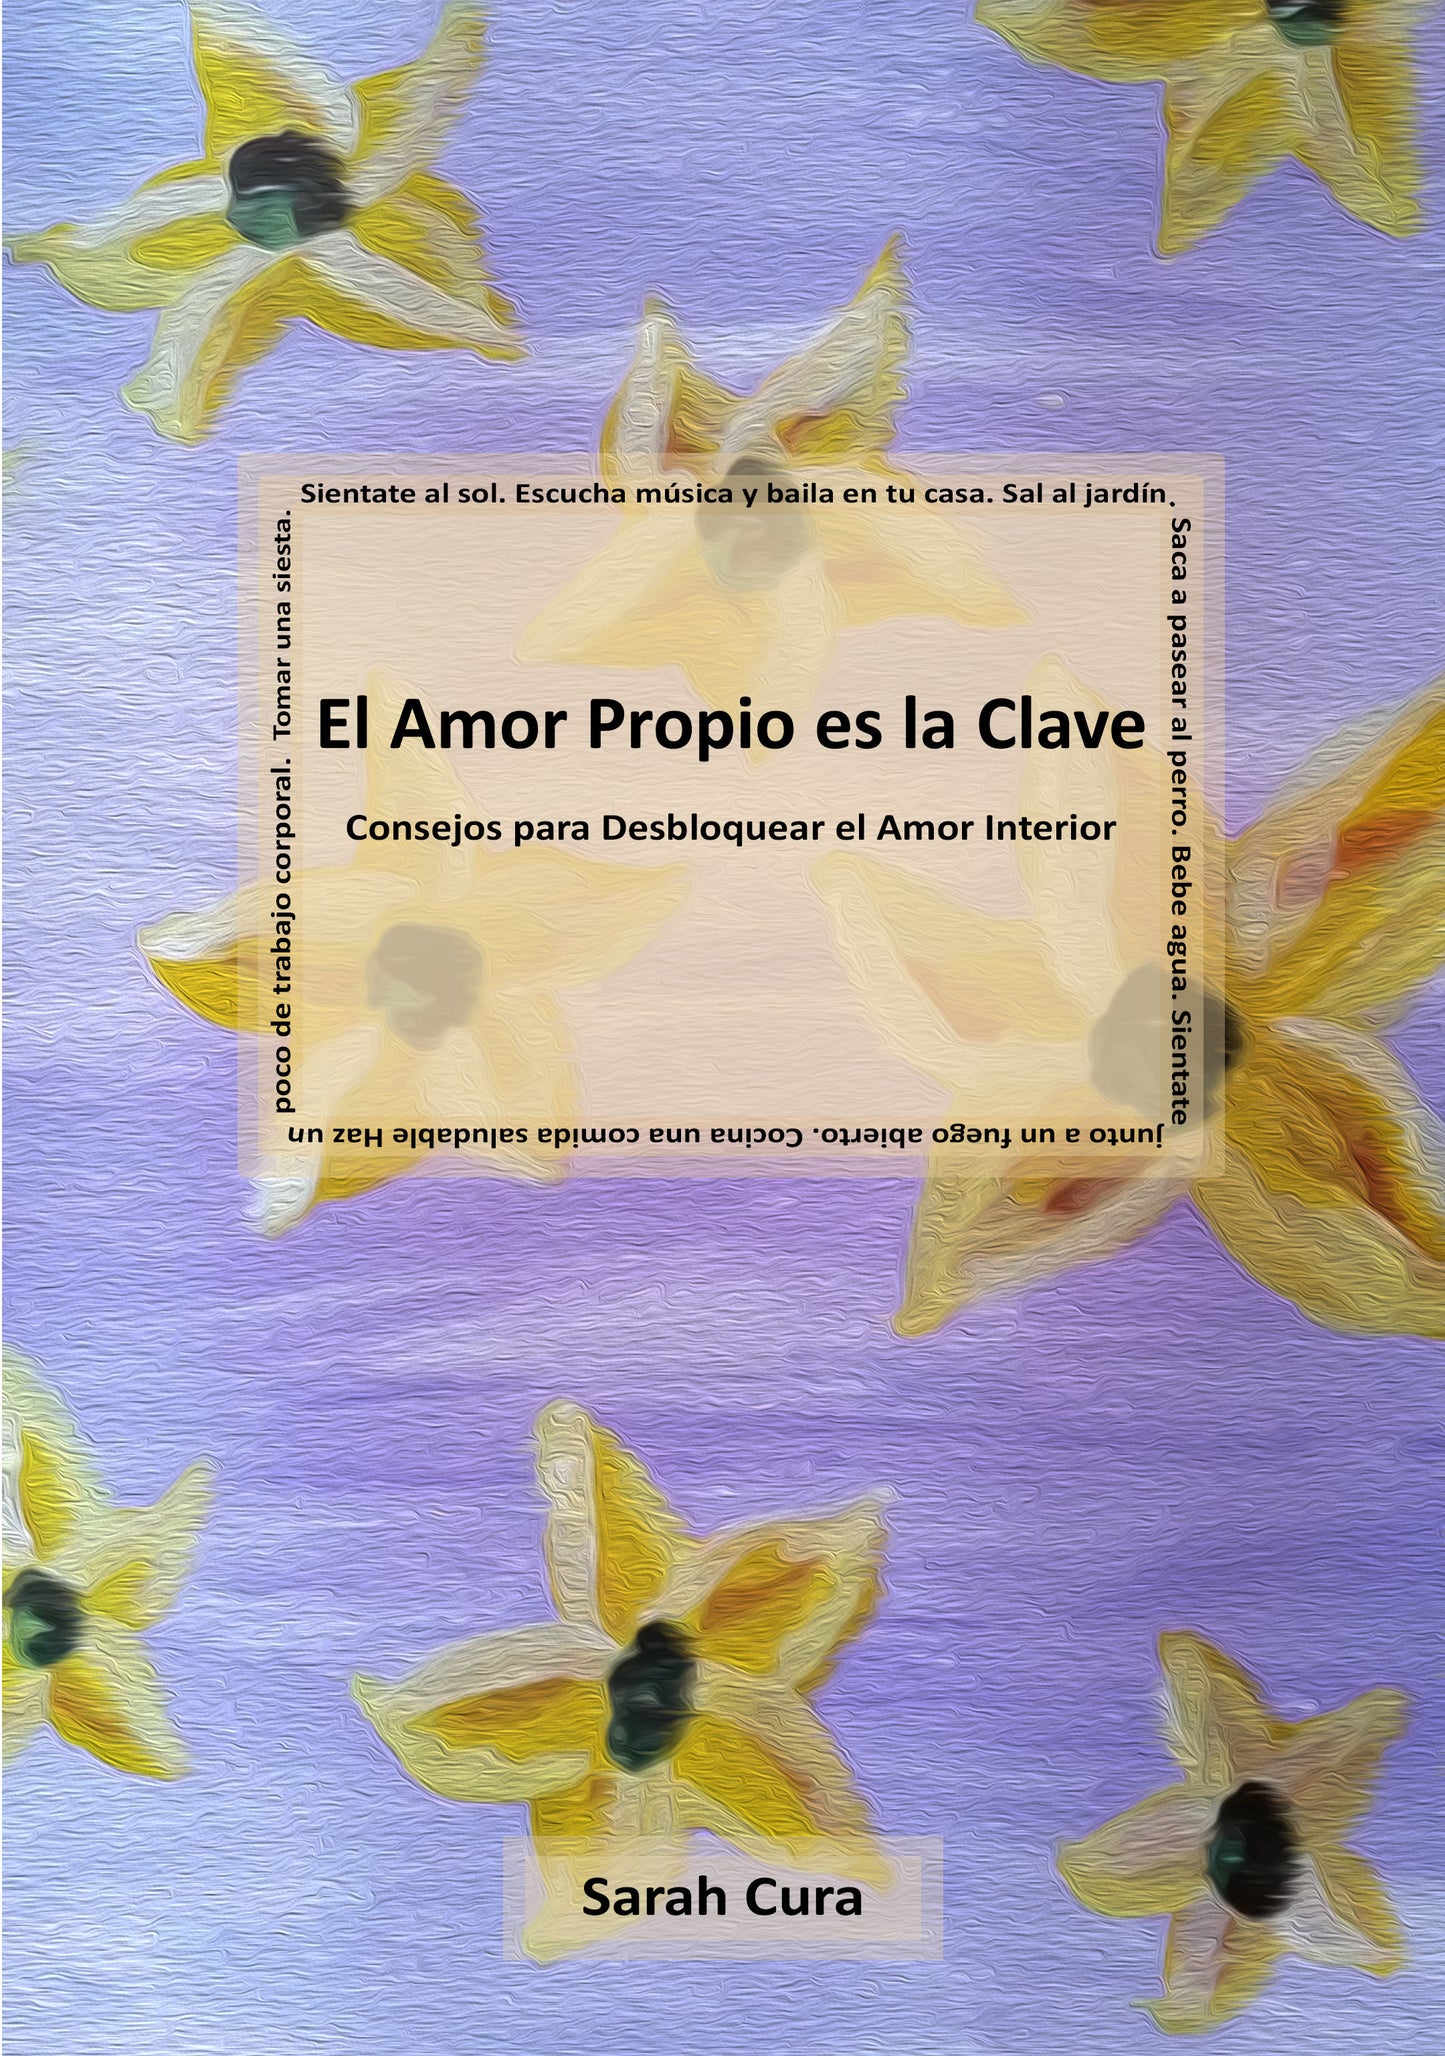 El Amor Propio es la Clave - Consejos para desbloquear el Amor interior  EBOOK